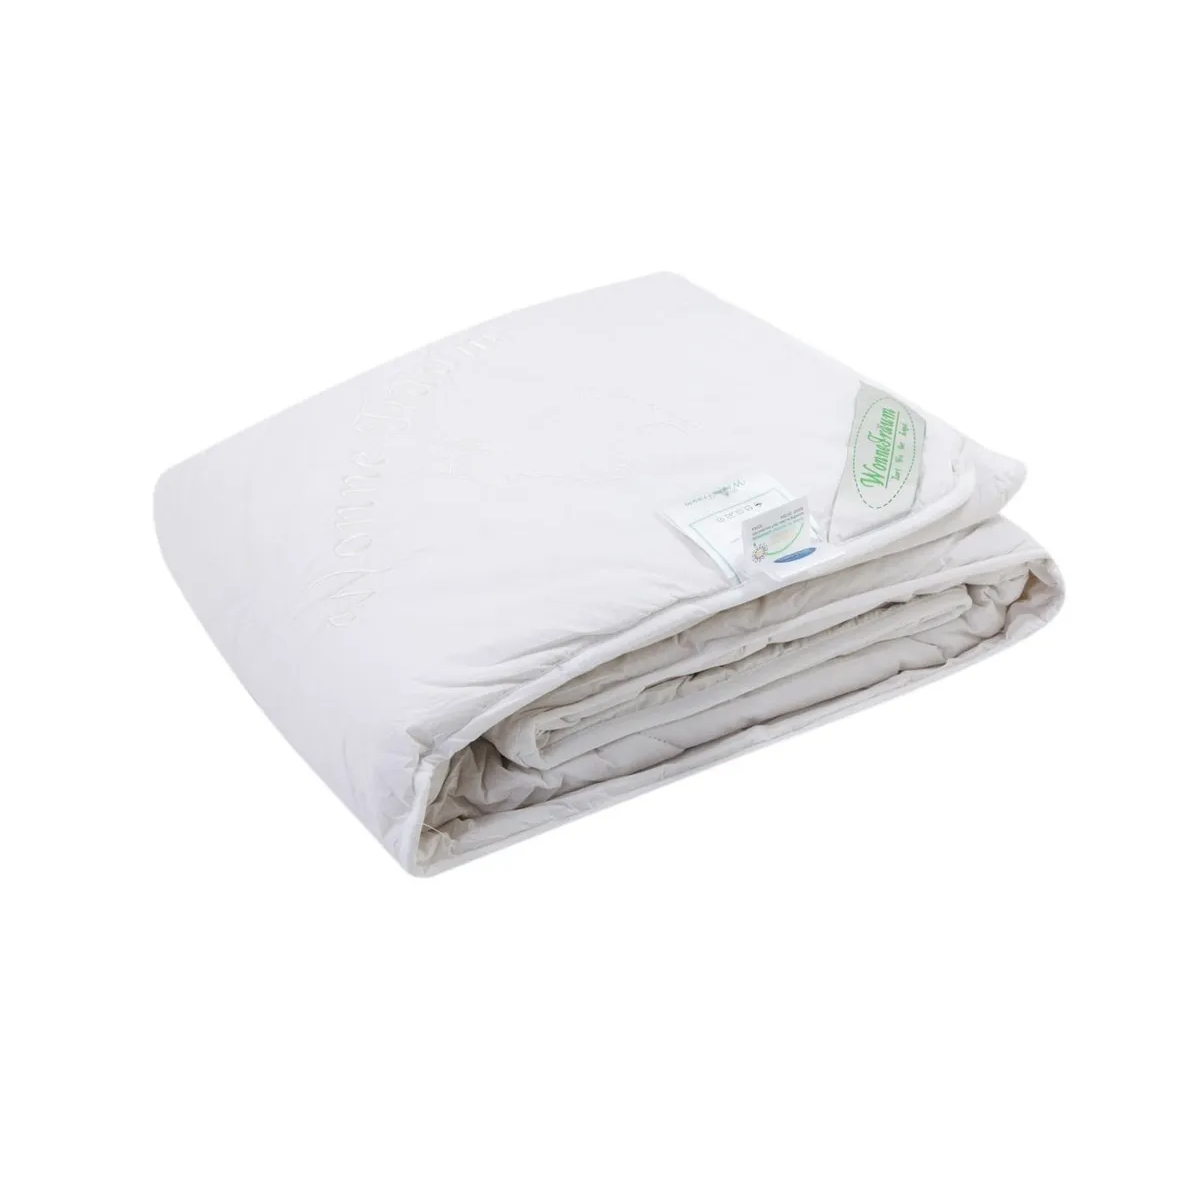 Одеяло шерстяное Wonne Traum белое 200х220 см (2709-26241) одеяло шерстяное wonne traum кремовое 200х220 см 2709 26245